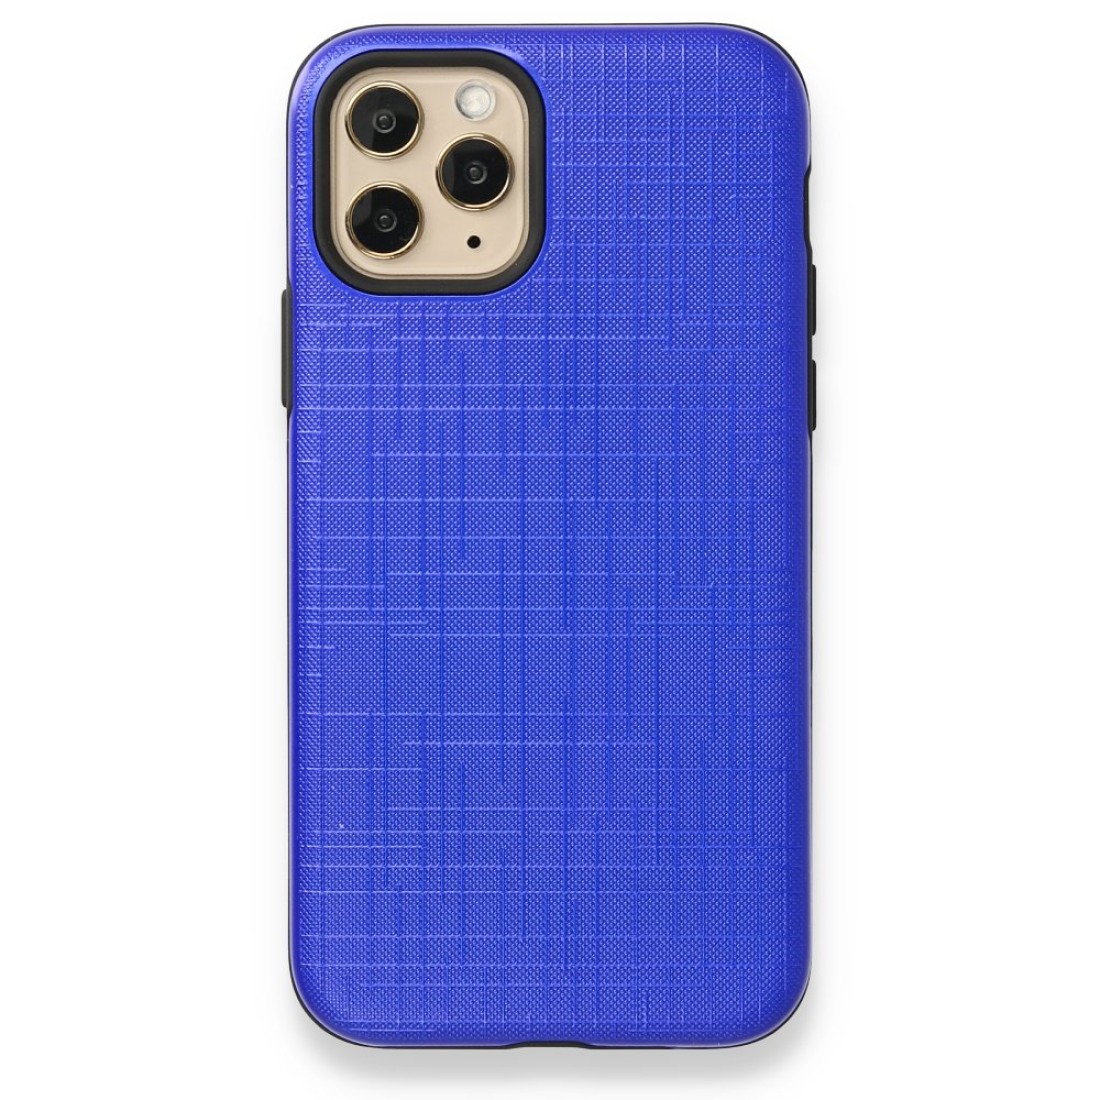 Apple iPhone 11 Pro Kılıf YouYou Silikon Kapak - Mavi